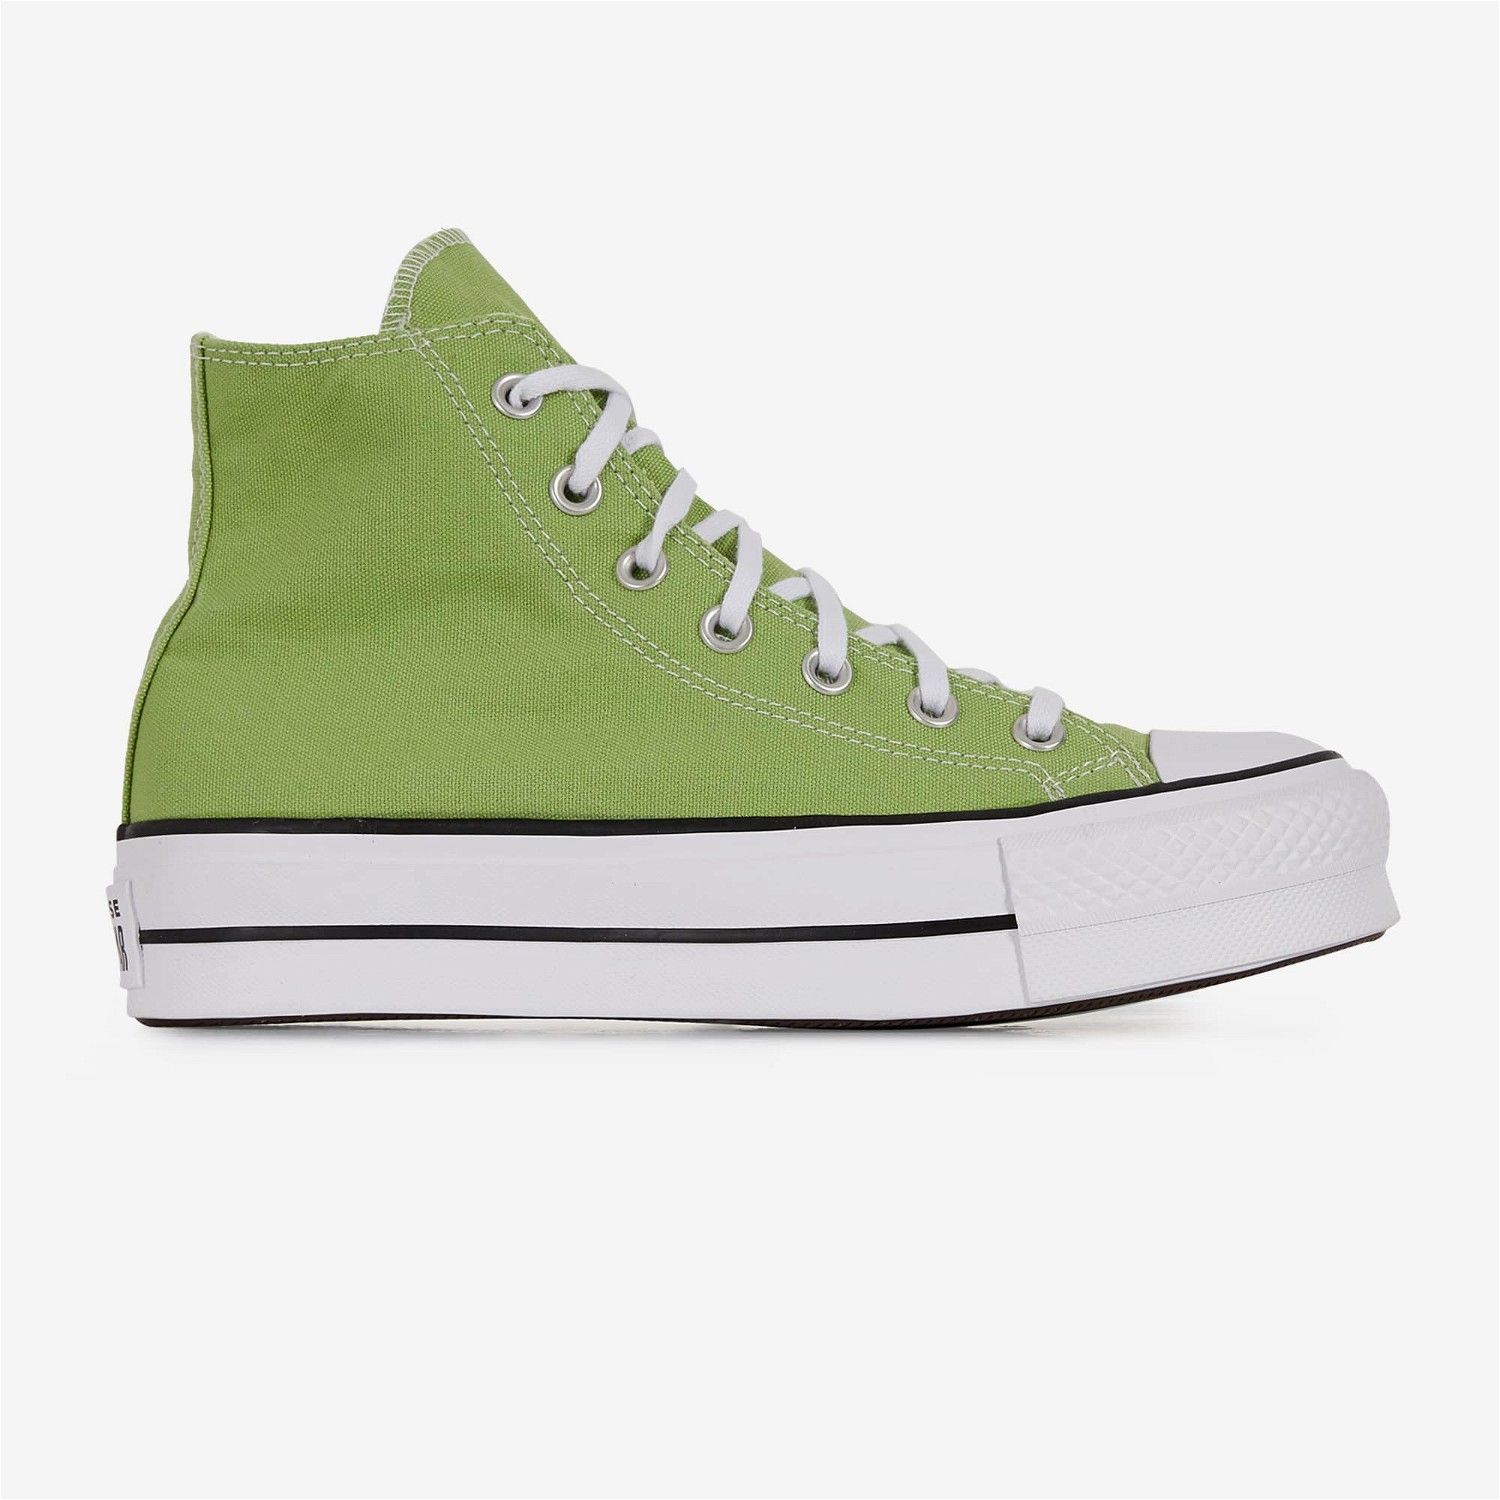 Sneakerek és cipők Converse Chuck Taylor All Star Lift Hi "Lime" Zöld | A06137C, 0